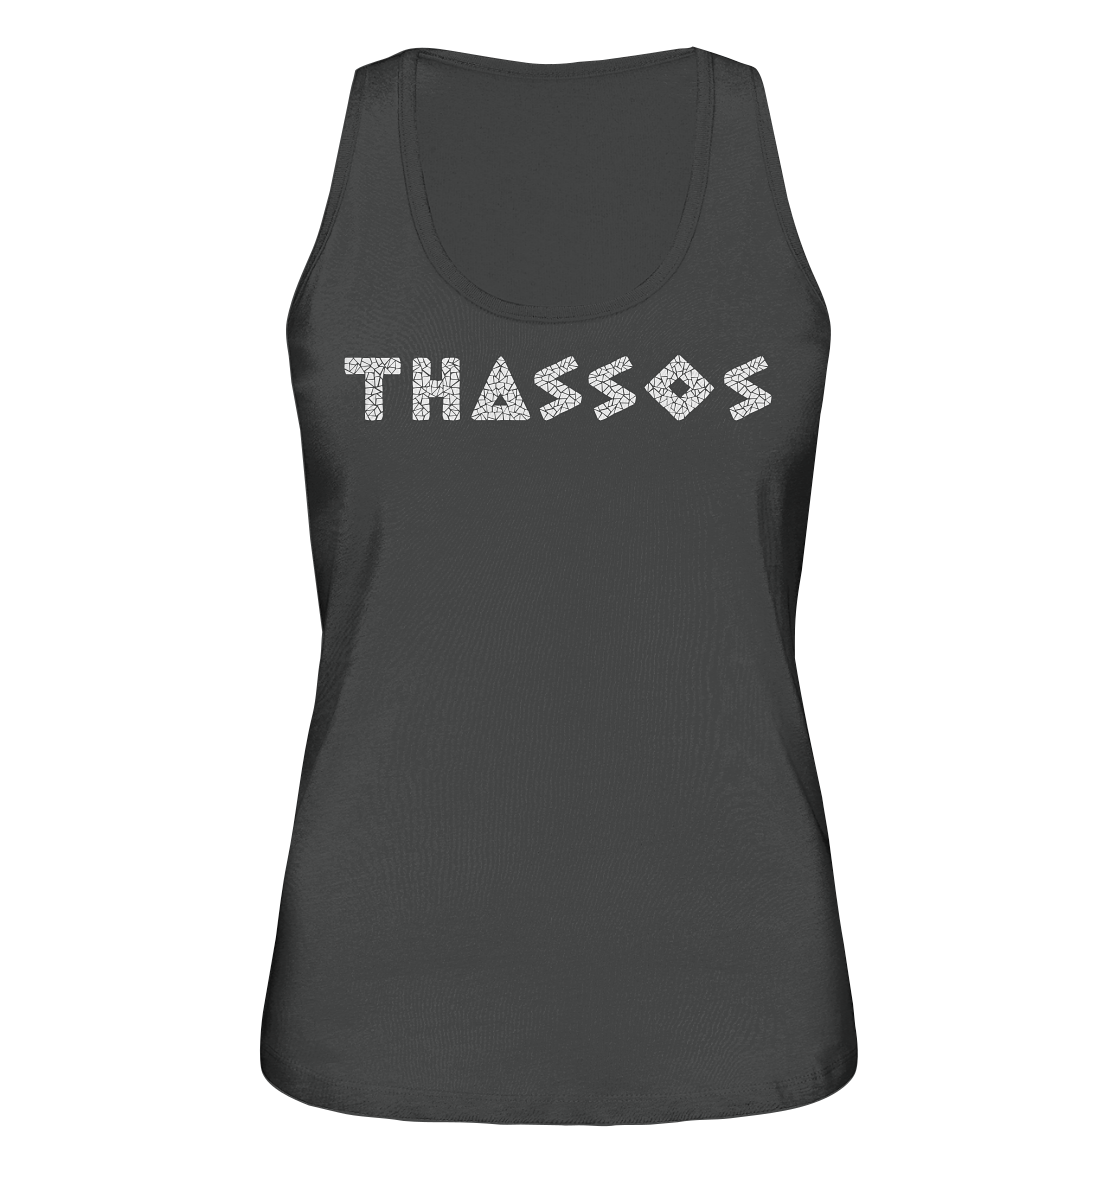 Thassos Mosaic - Ladies Organic Tank Top